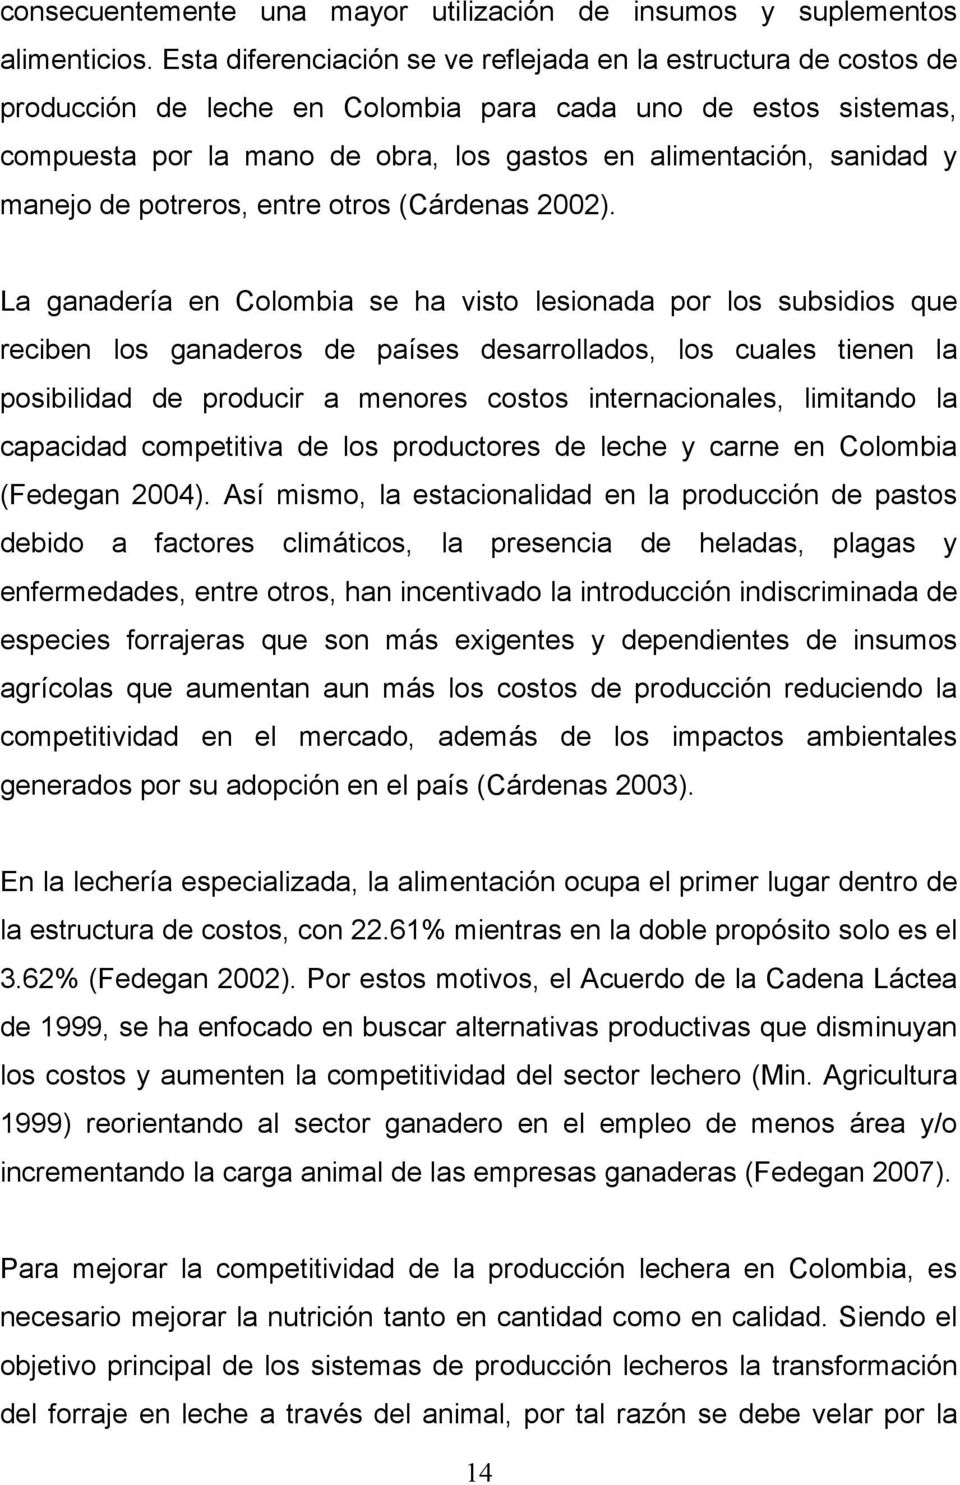 manejo de potreros, entre otros (Cárdenas 2002).